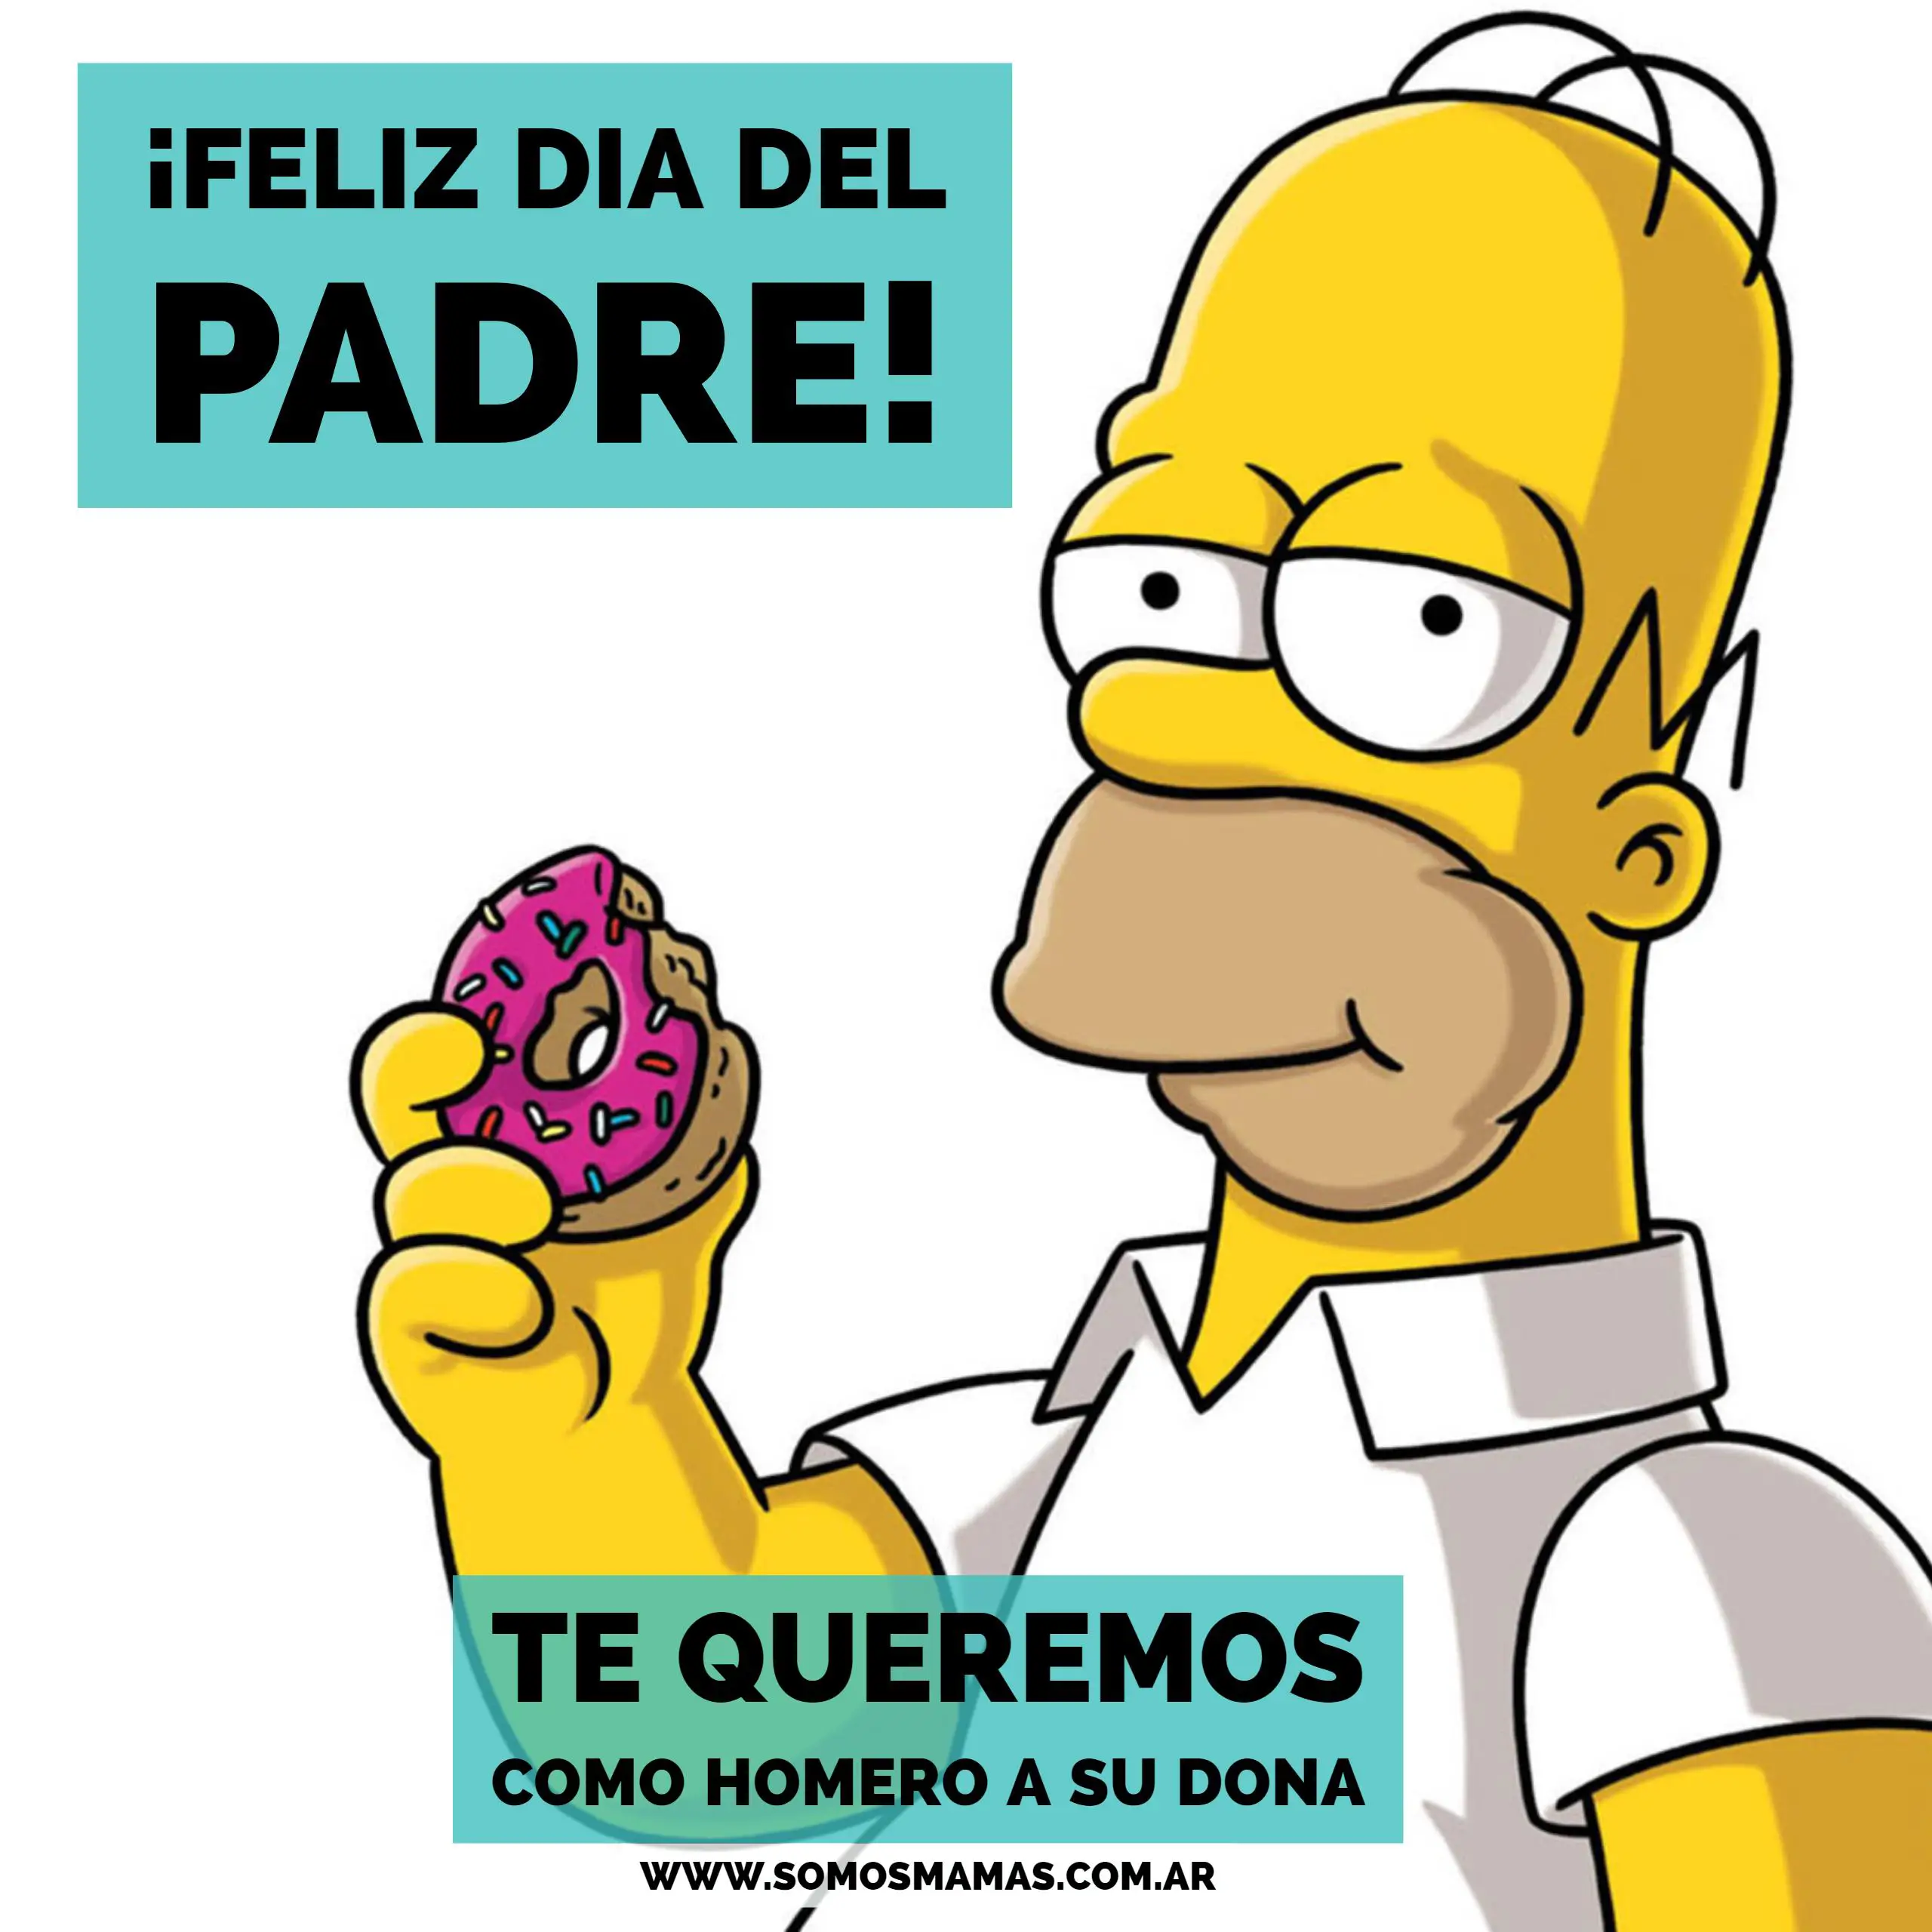 Homero del dia del padre